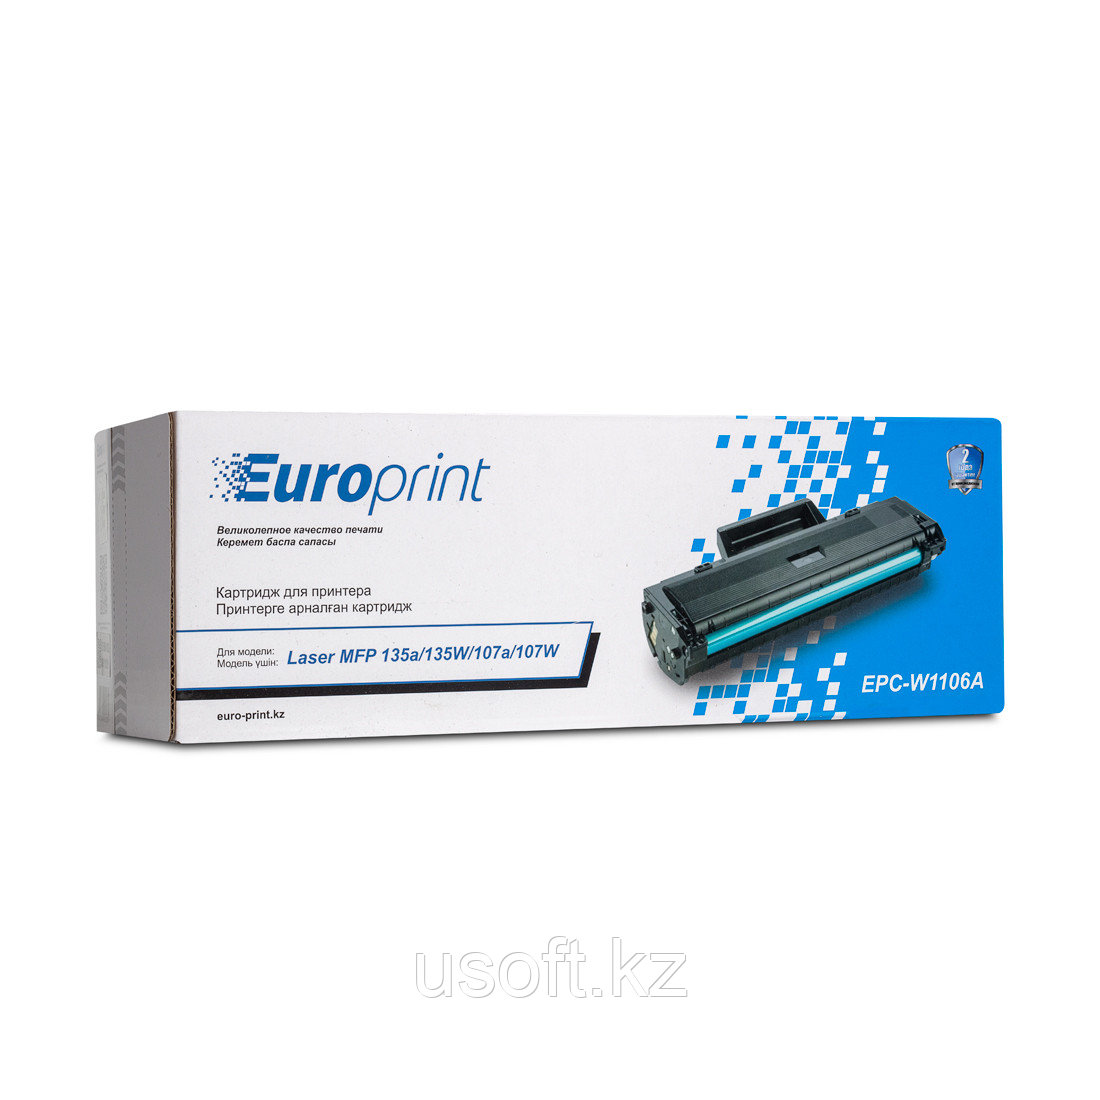 Картридж Europrint EPC-W1106A для HP Laser 107r/107a/107w/135a/135r/135w/137fnw